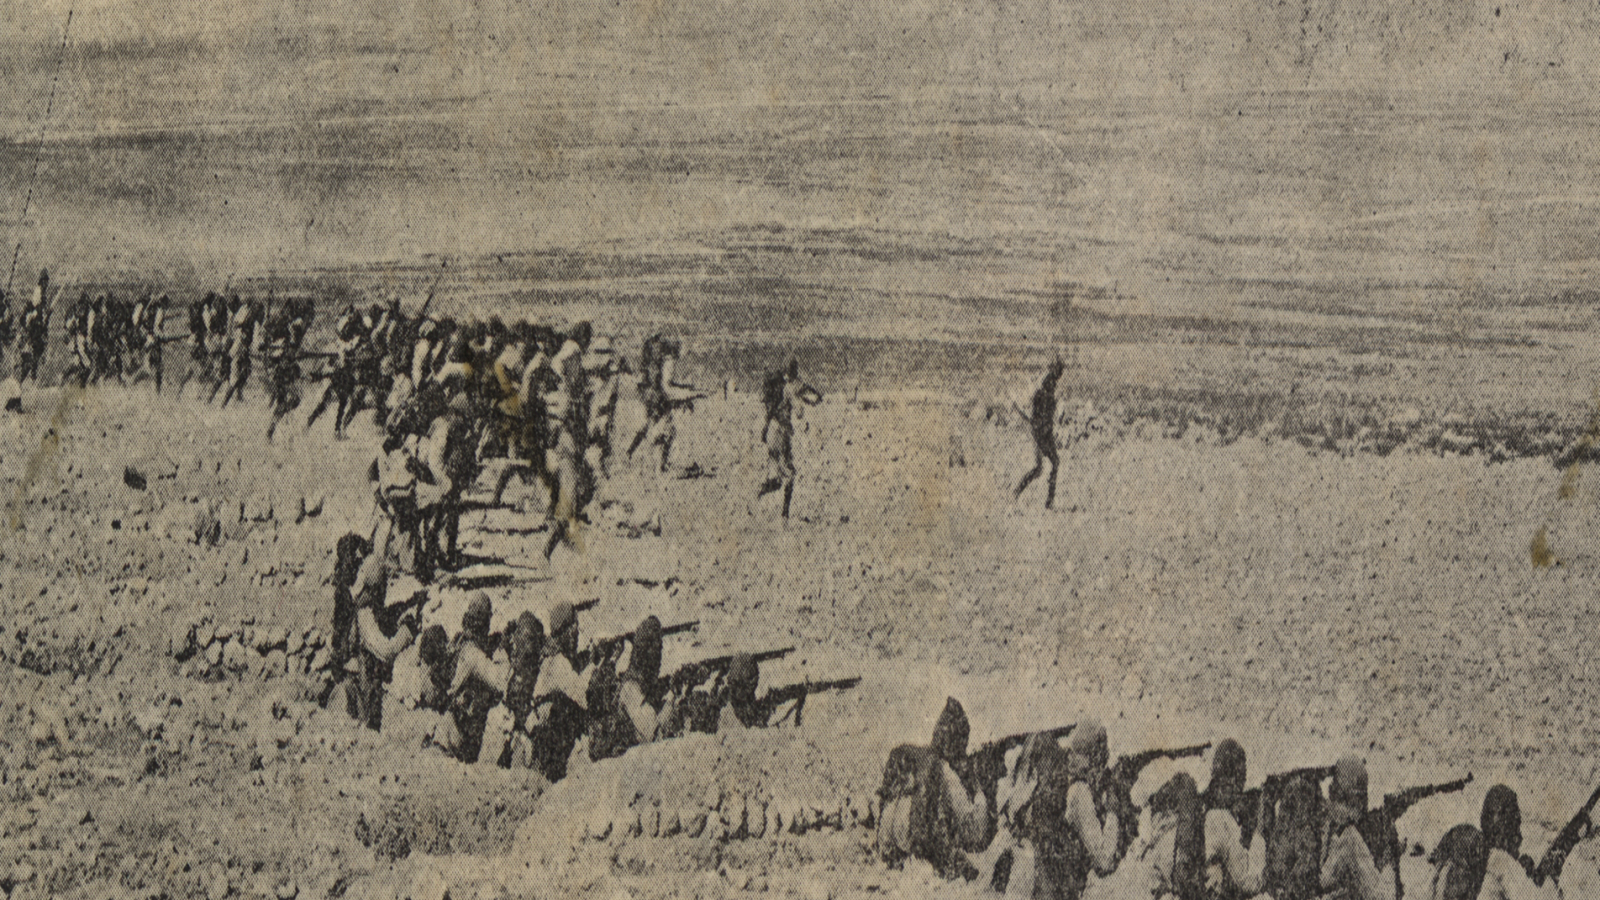  الجيش العثماني في العراق أثناء الحرب العالمية الأولى (مواقع التواصل)